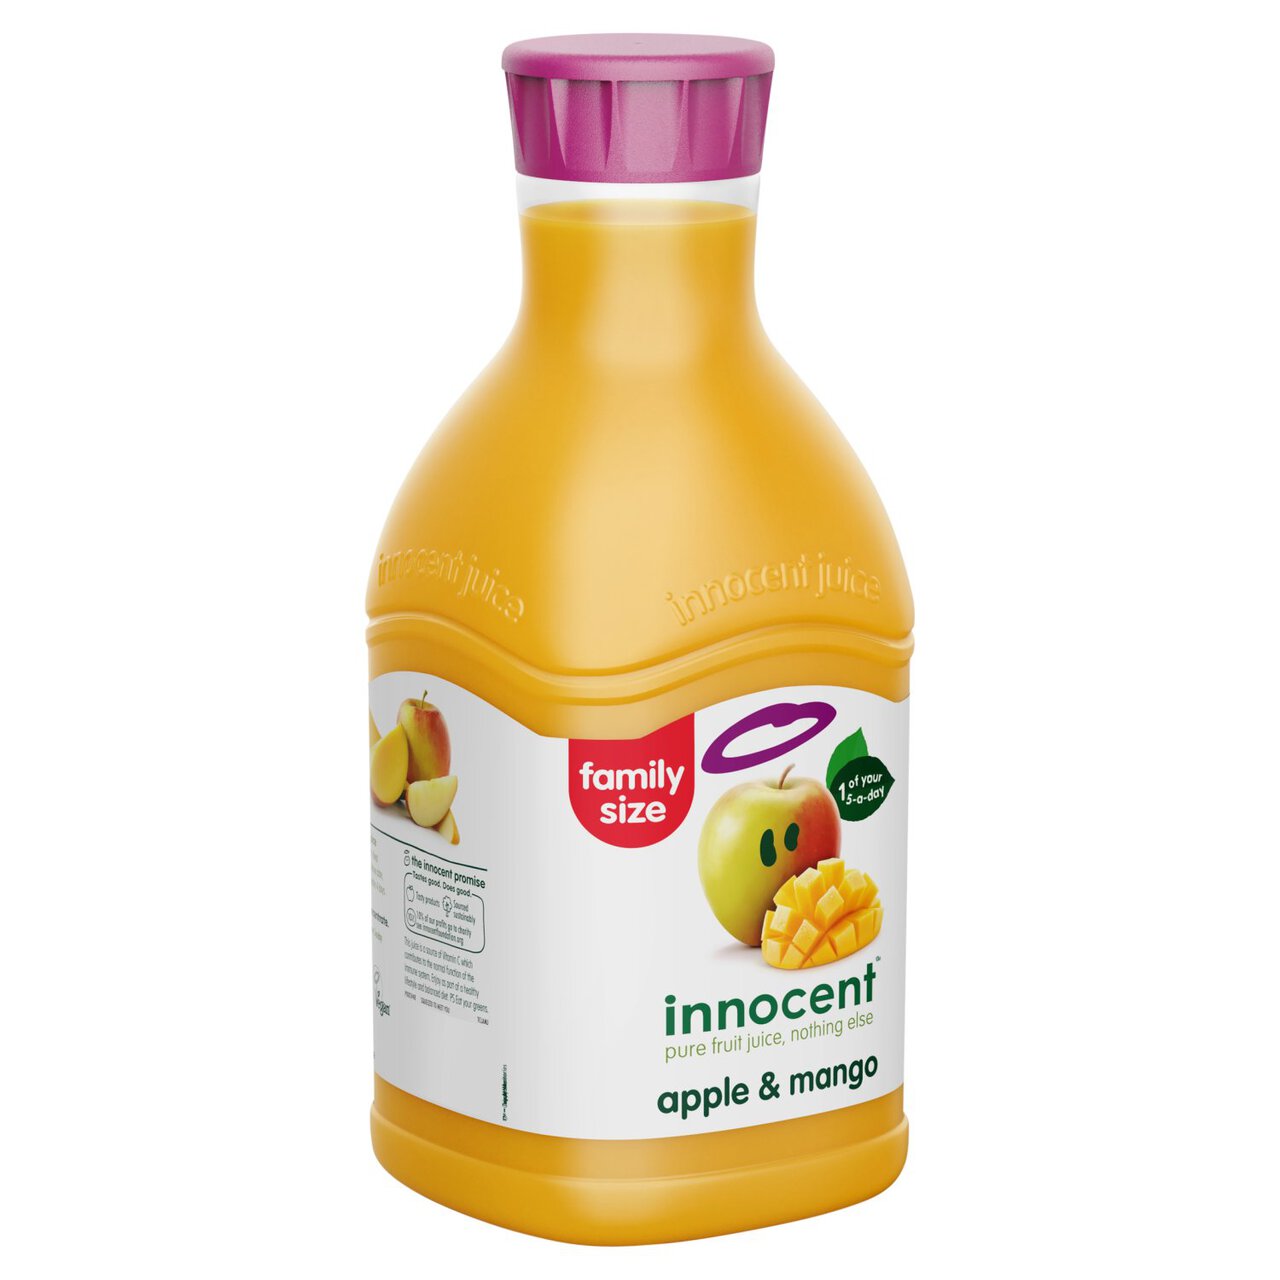 Innocent Apple & Mango Juice 1.35l